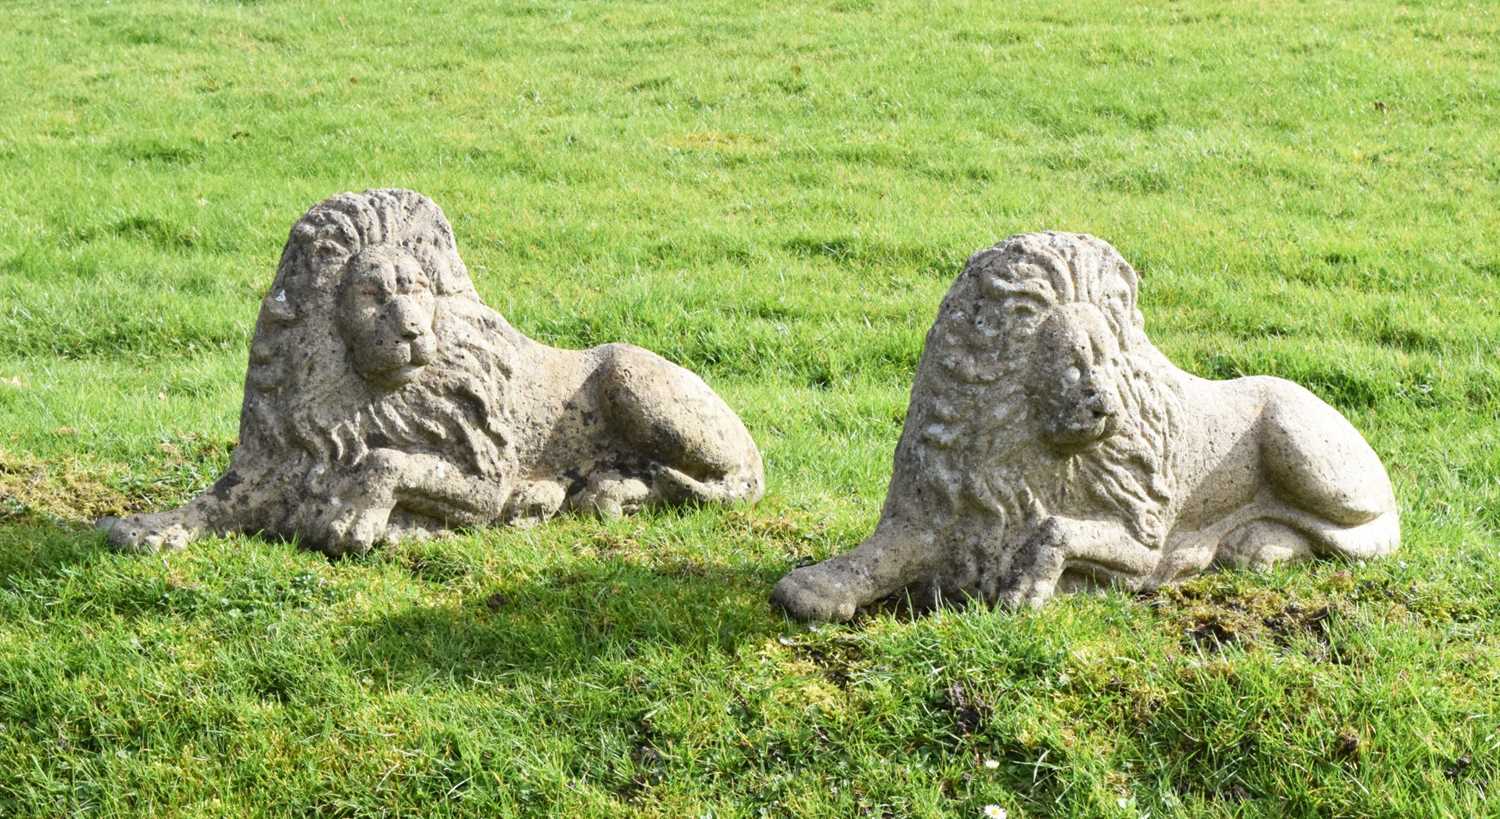 Pair of composite stone garden lions in recumbent posture